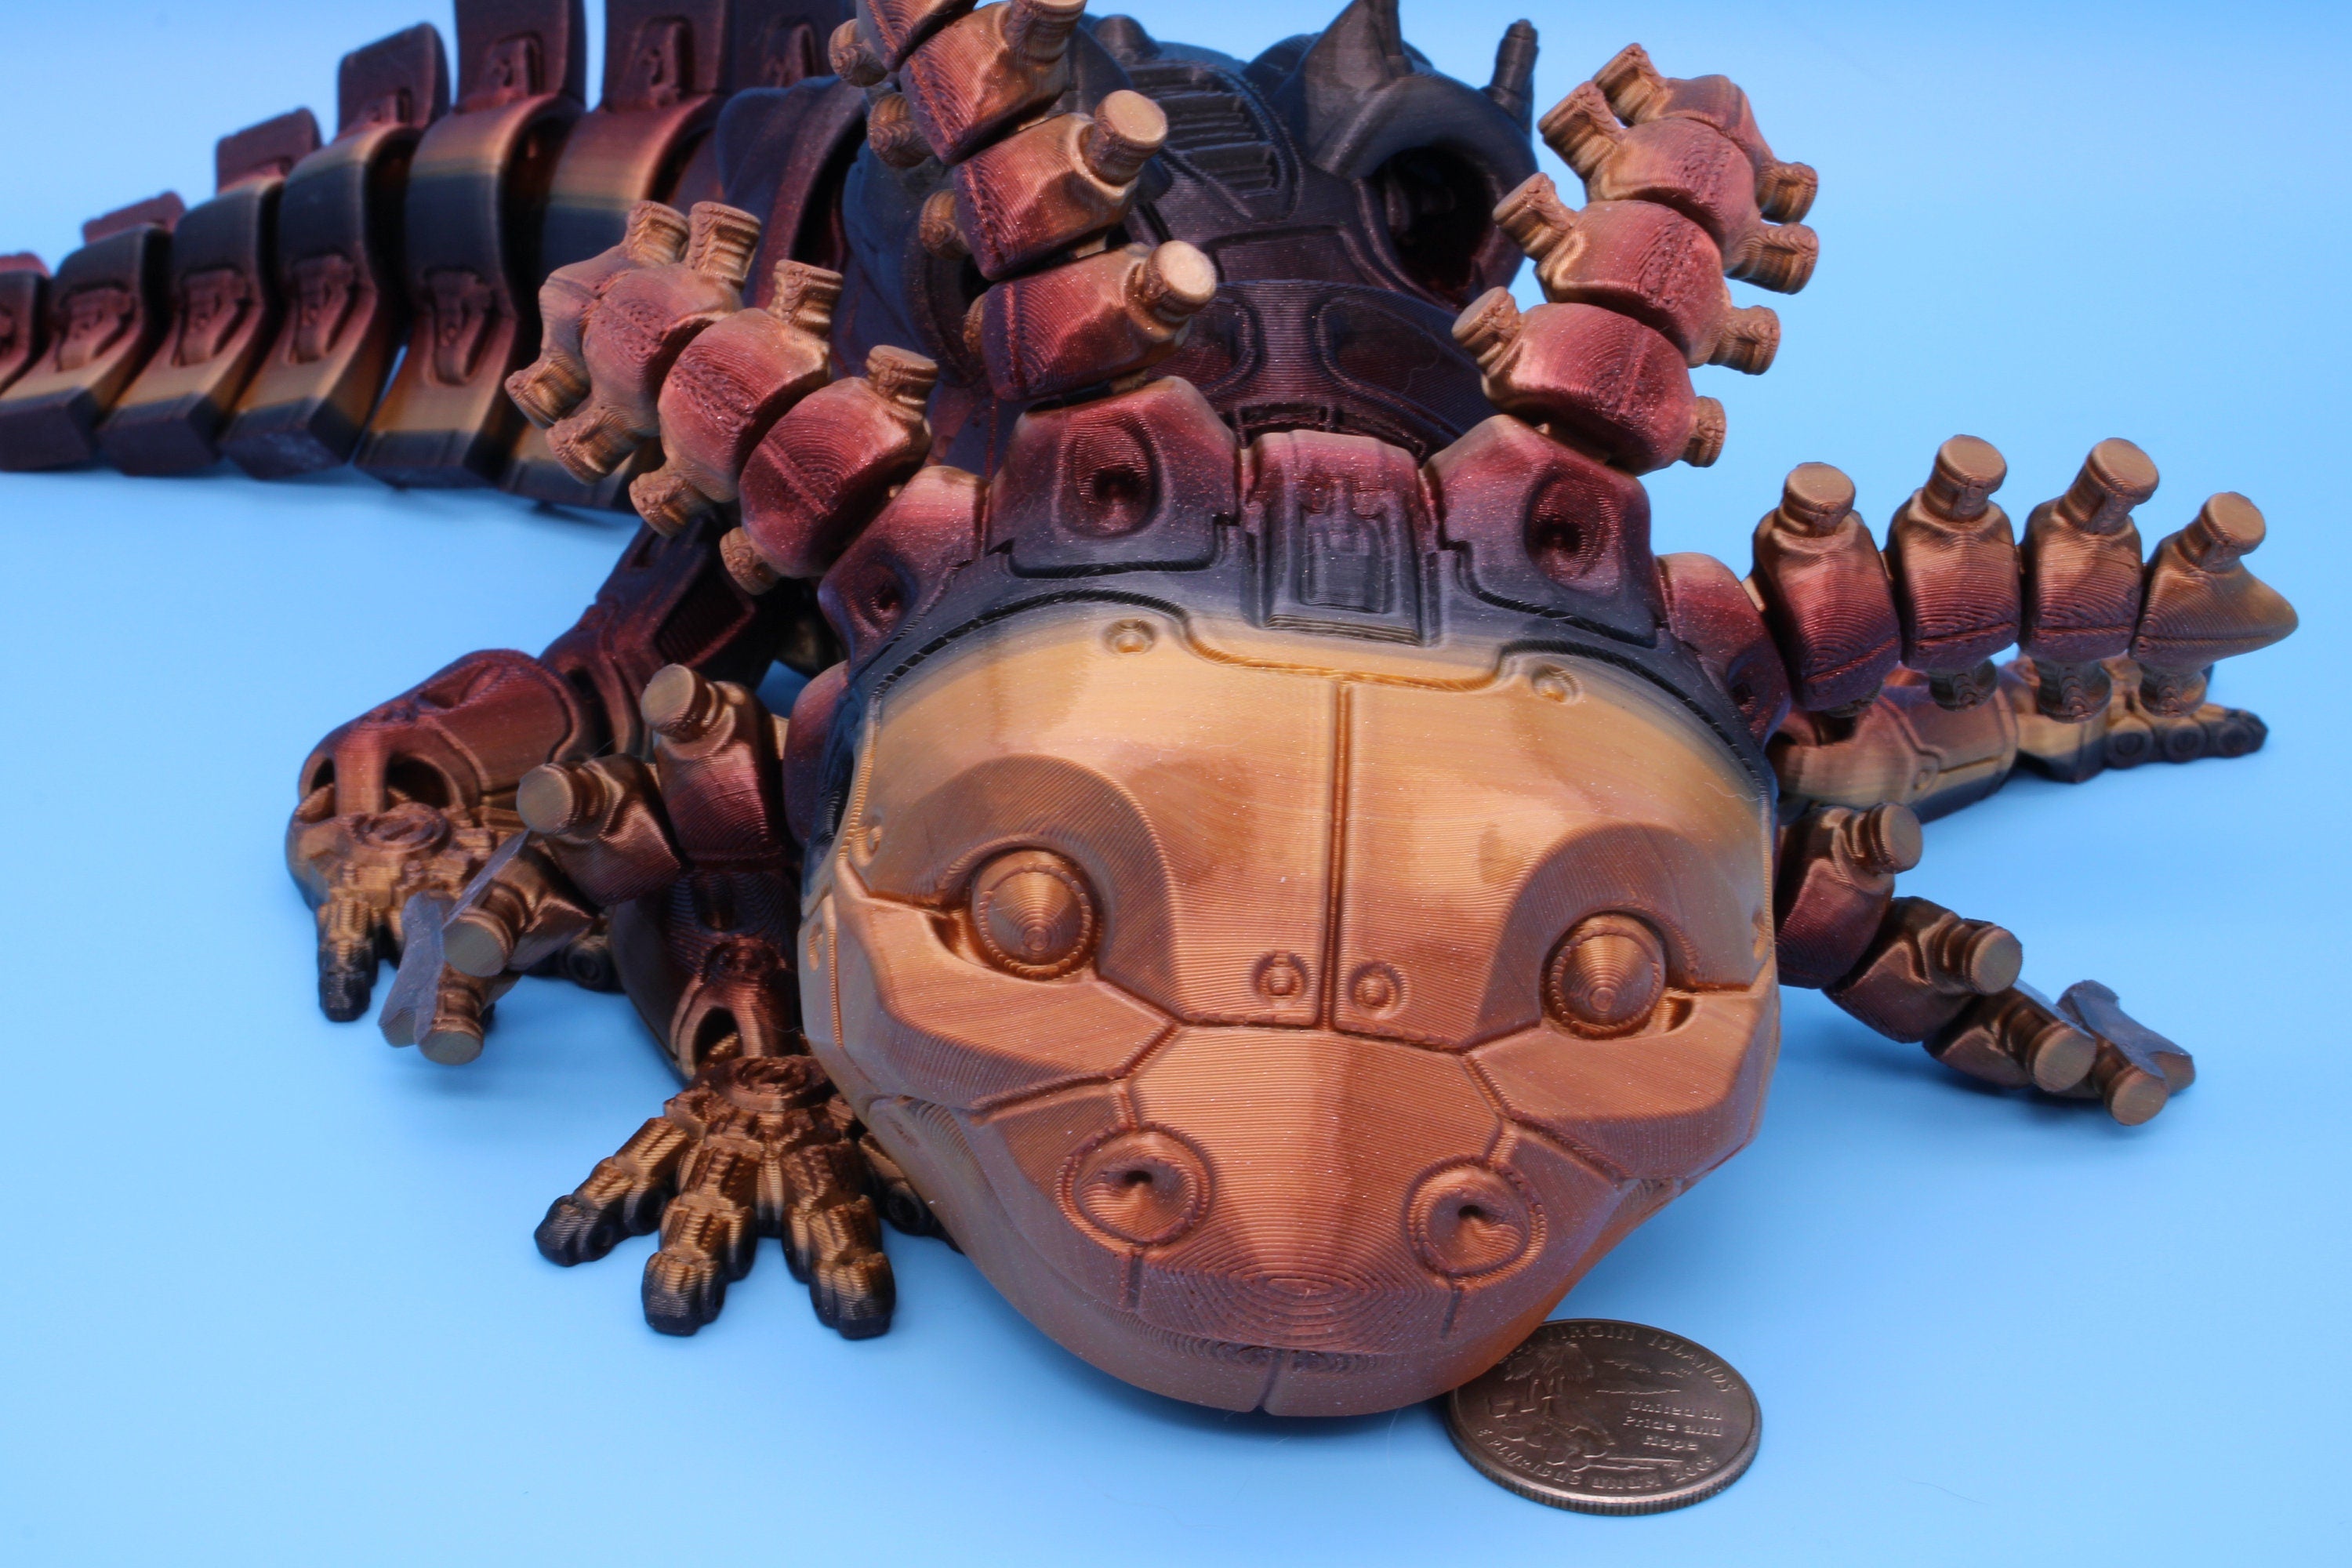 Robolotl the Robot Axolotl | 15 Inches!